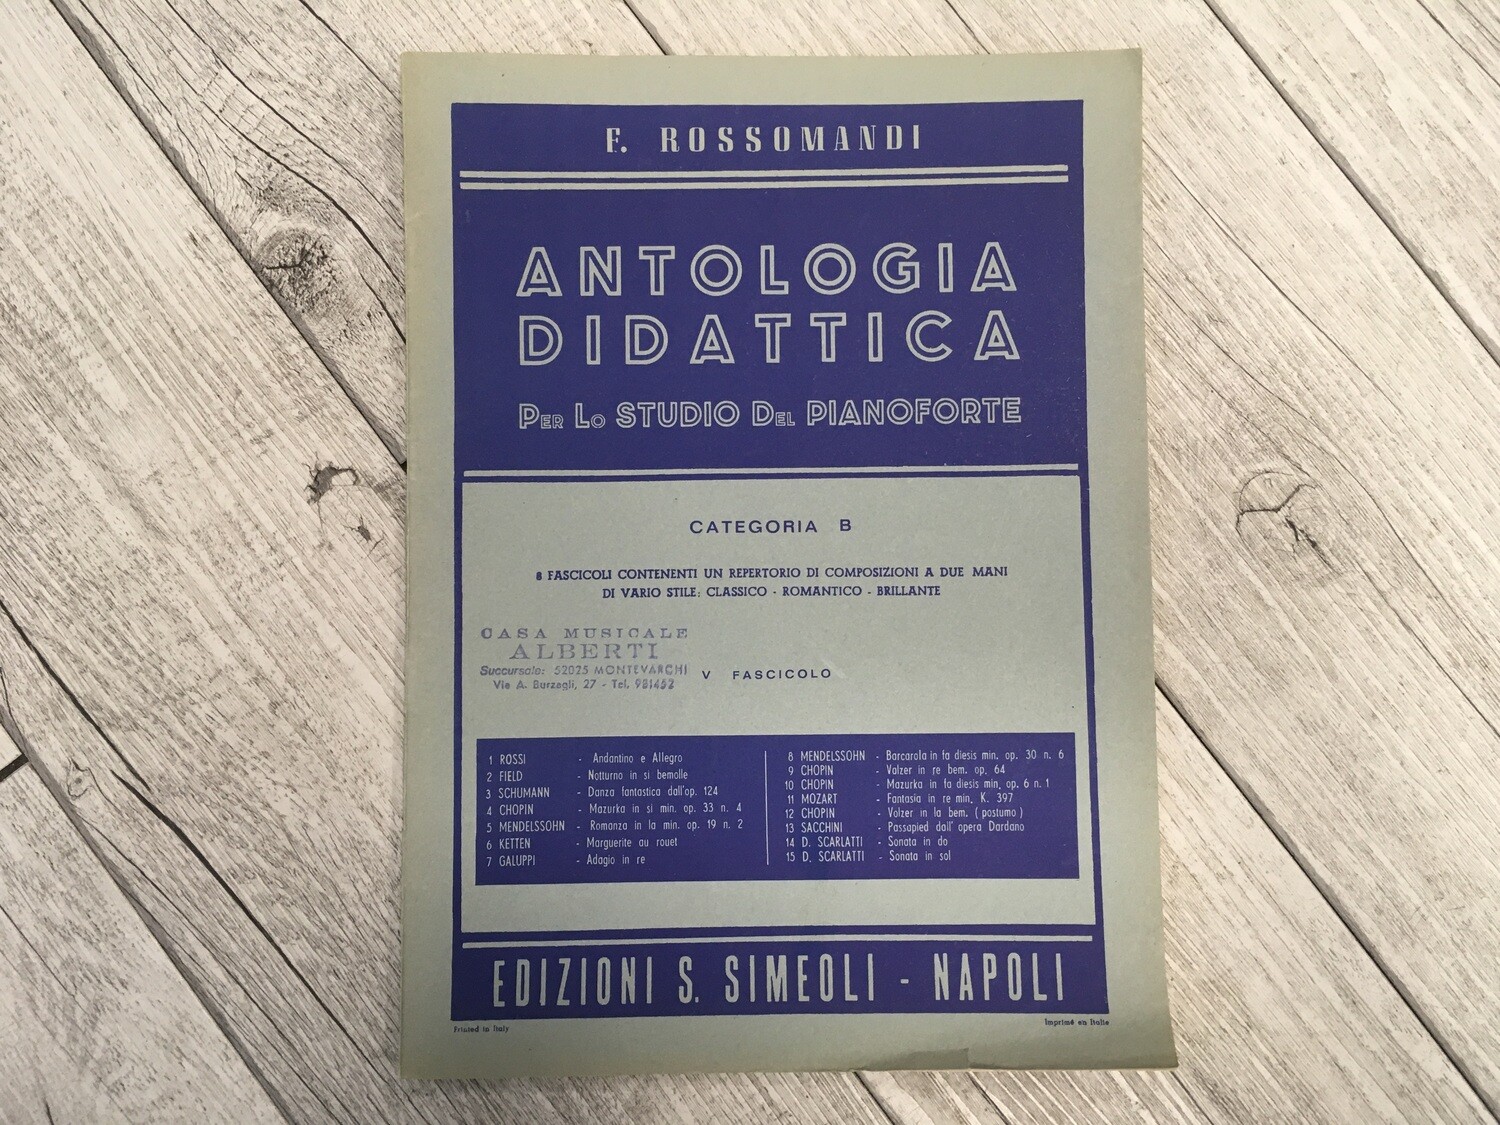 F. ROSSOMANDI - Antologia didattica per lo studio del pianoforte Categoria B Vol. 5